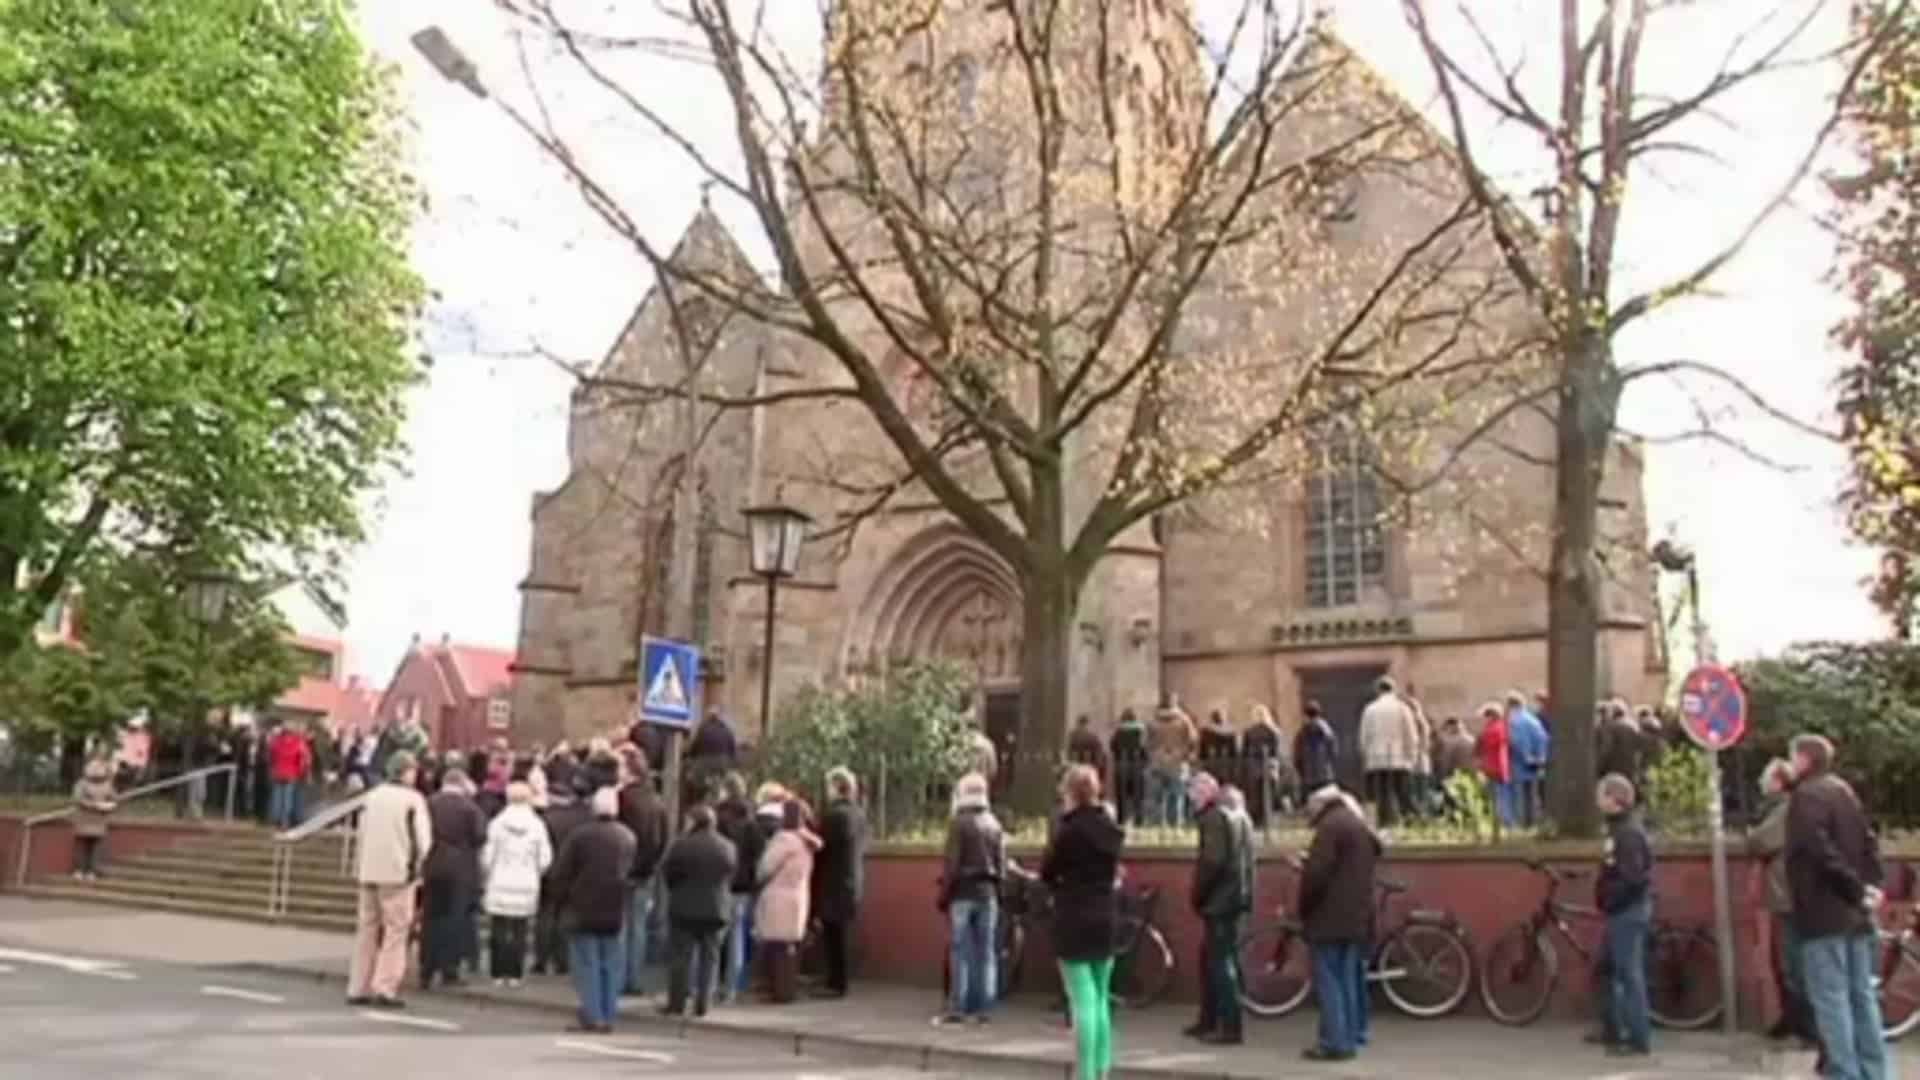 Karfreitag in Meppen: Traditioneller Prozessionsmarsch durch die Stadt